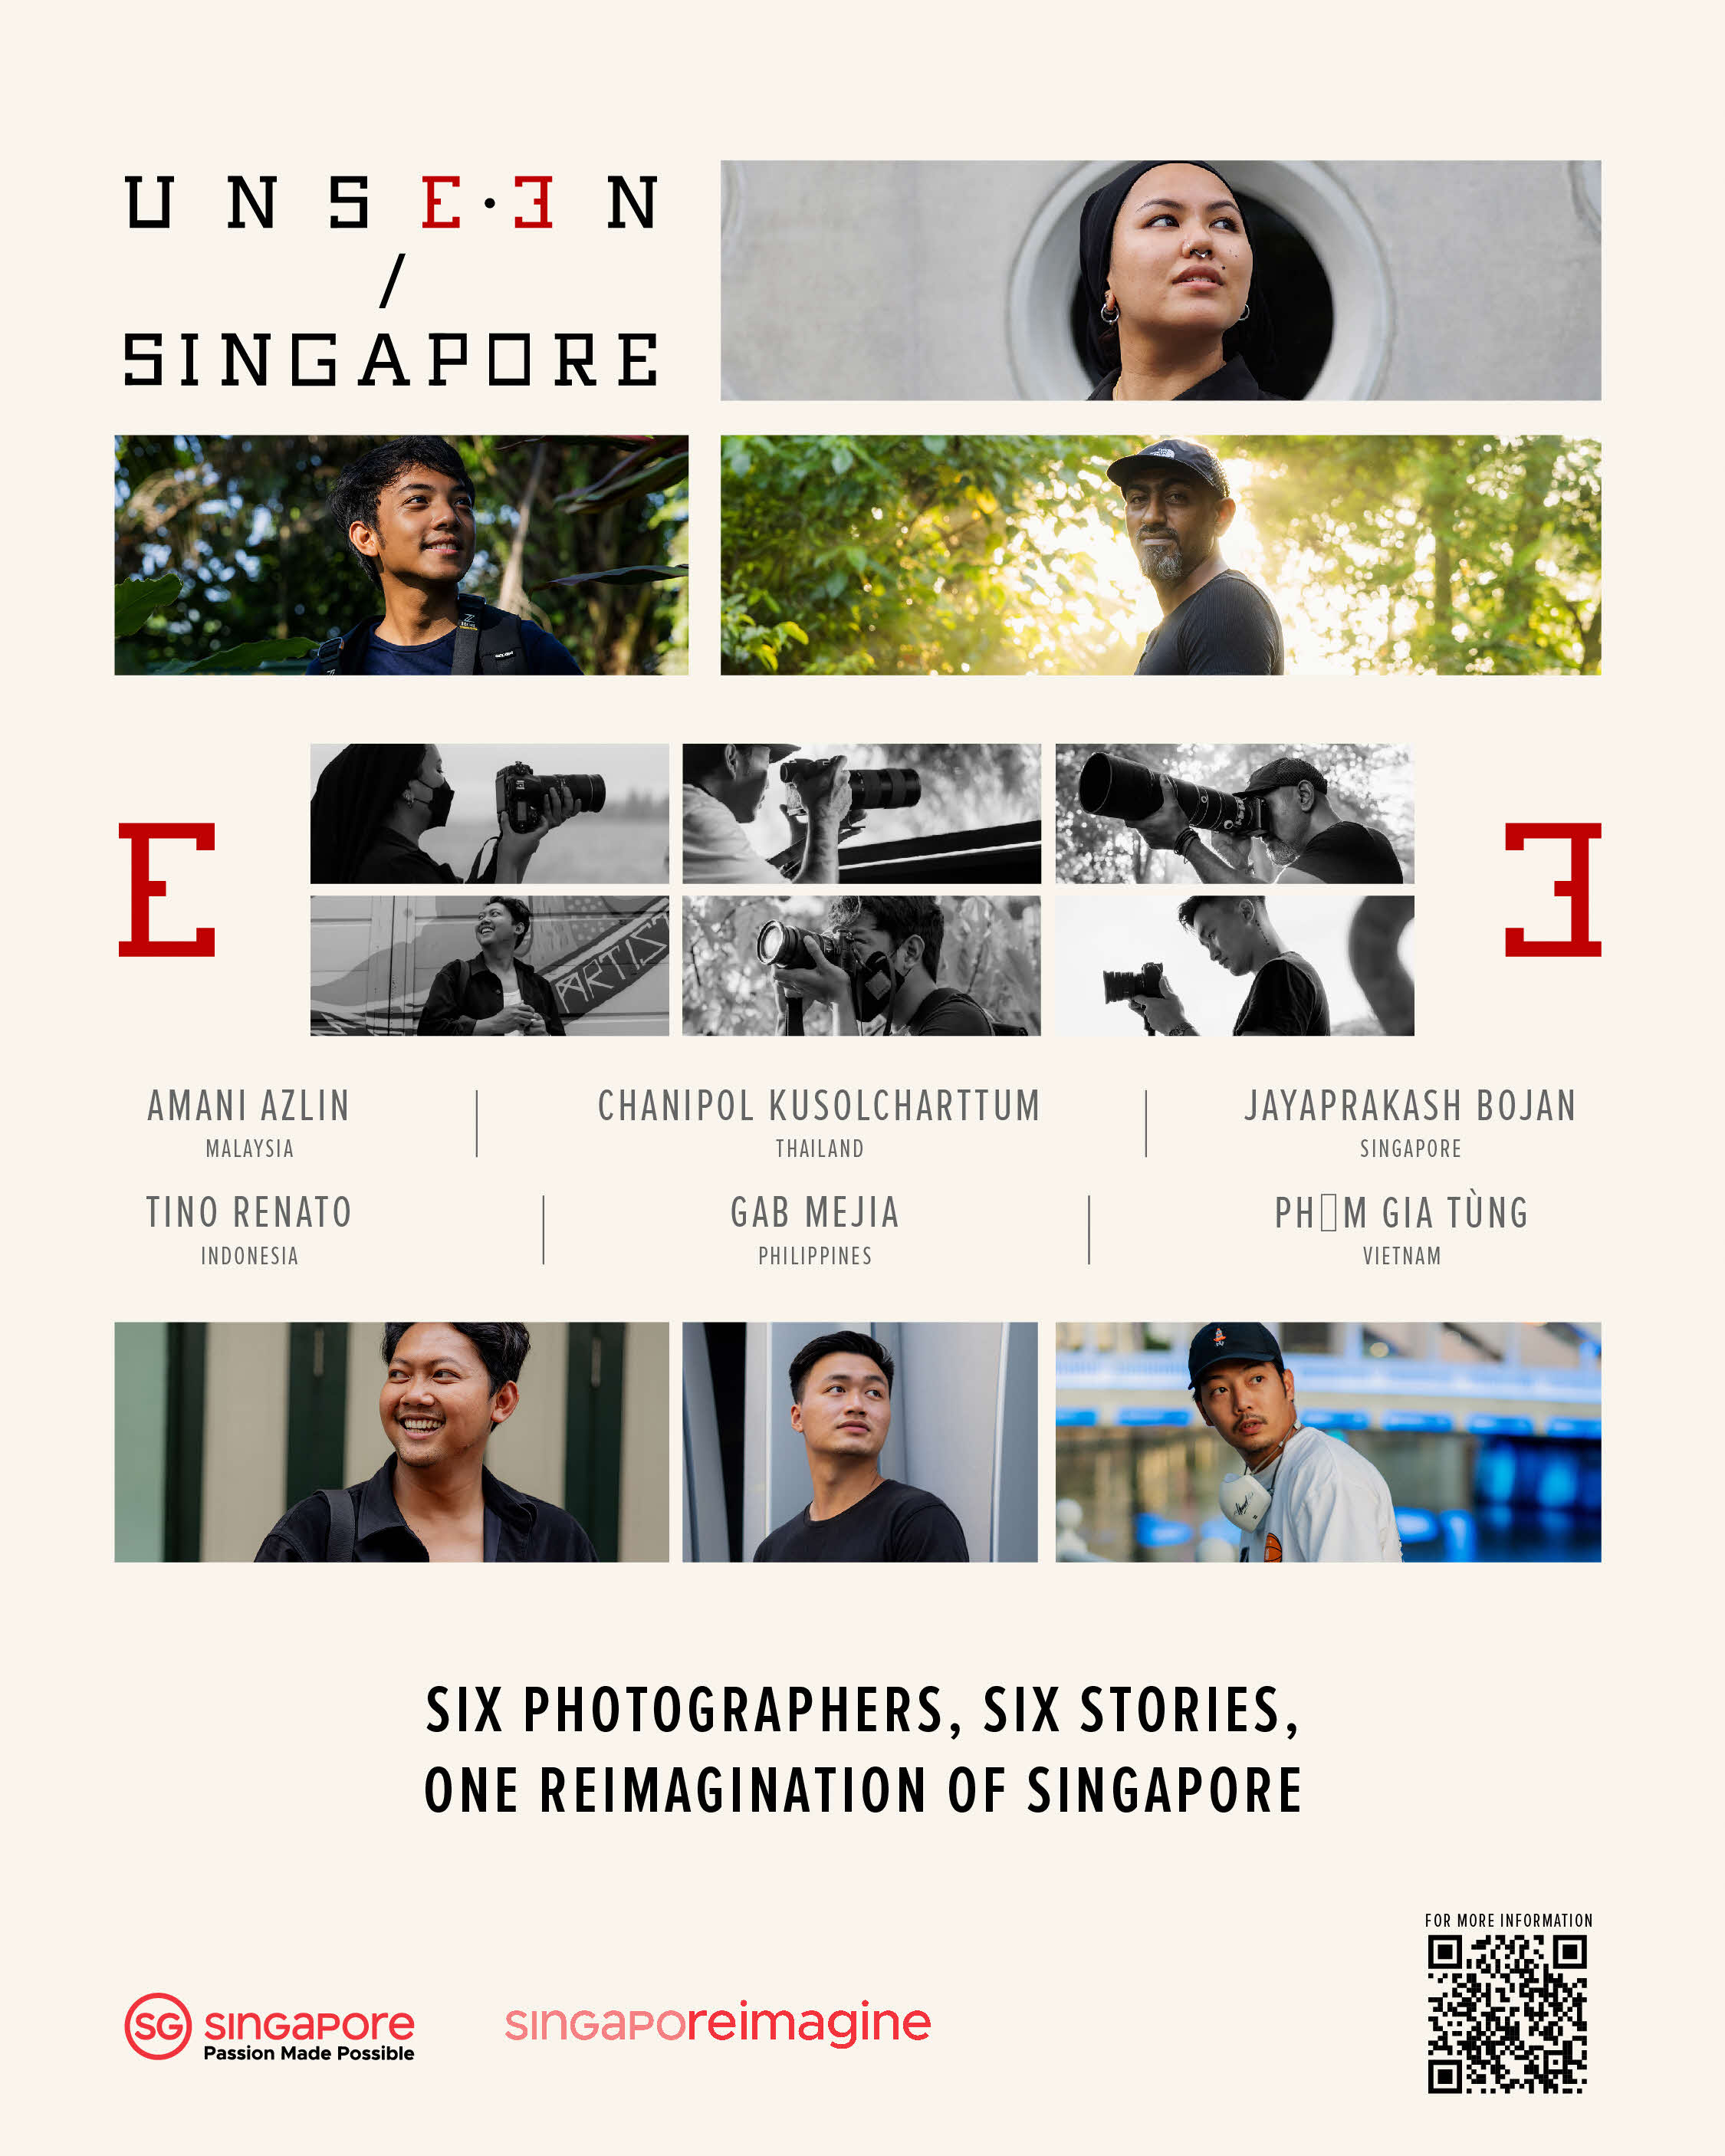 Tổng cục Du lịch Singapore ra mắt triển lãm ảnh độc đáo “UNSEEN/SINGAPORE”: Singapore – Những điều chưa biết